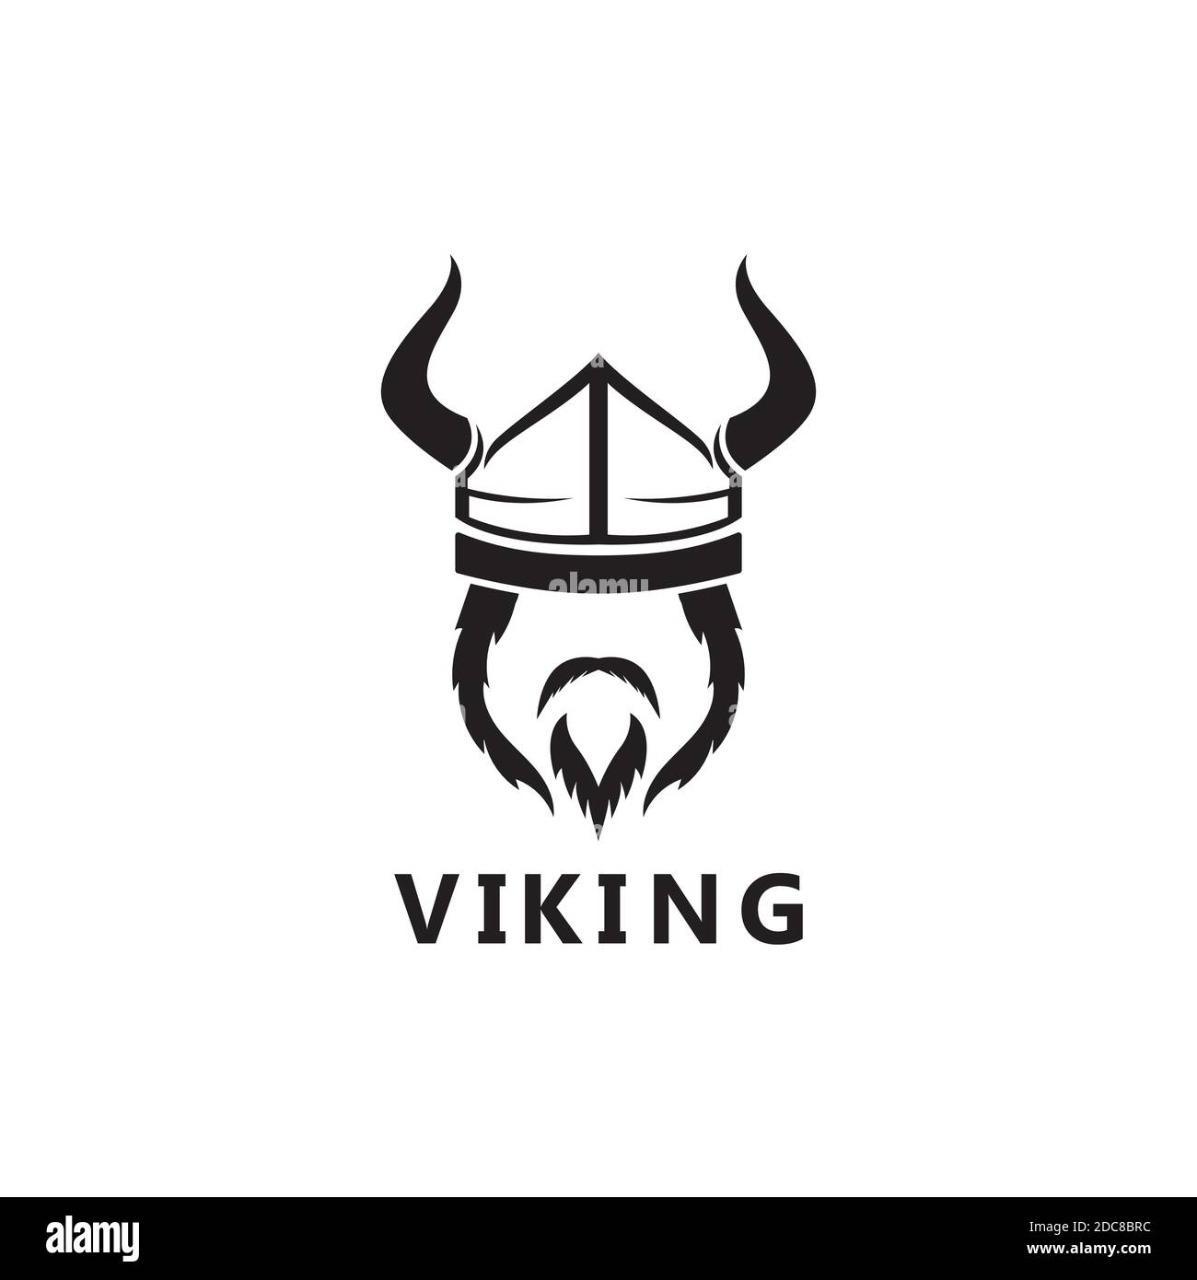 Vikingo95?s=8m3ko+yn45a1lvdz5+zqquqtaswtpc1eiomxznyrpg4=